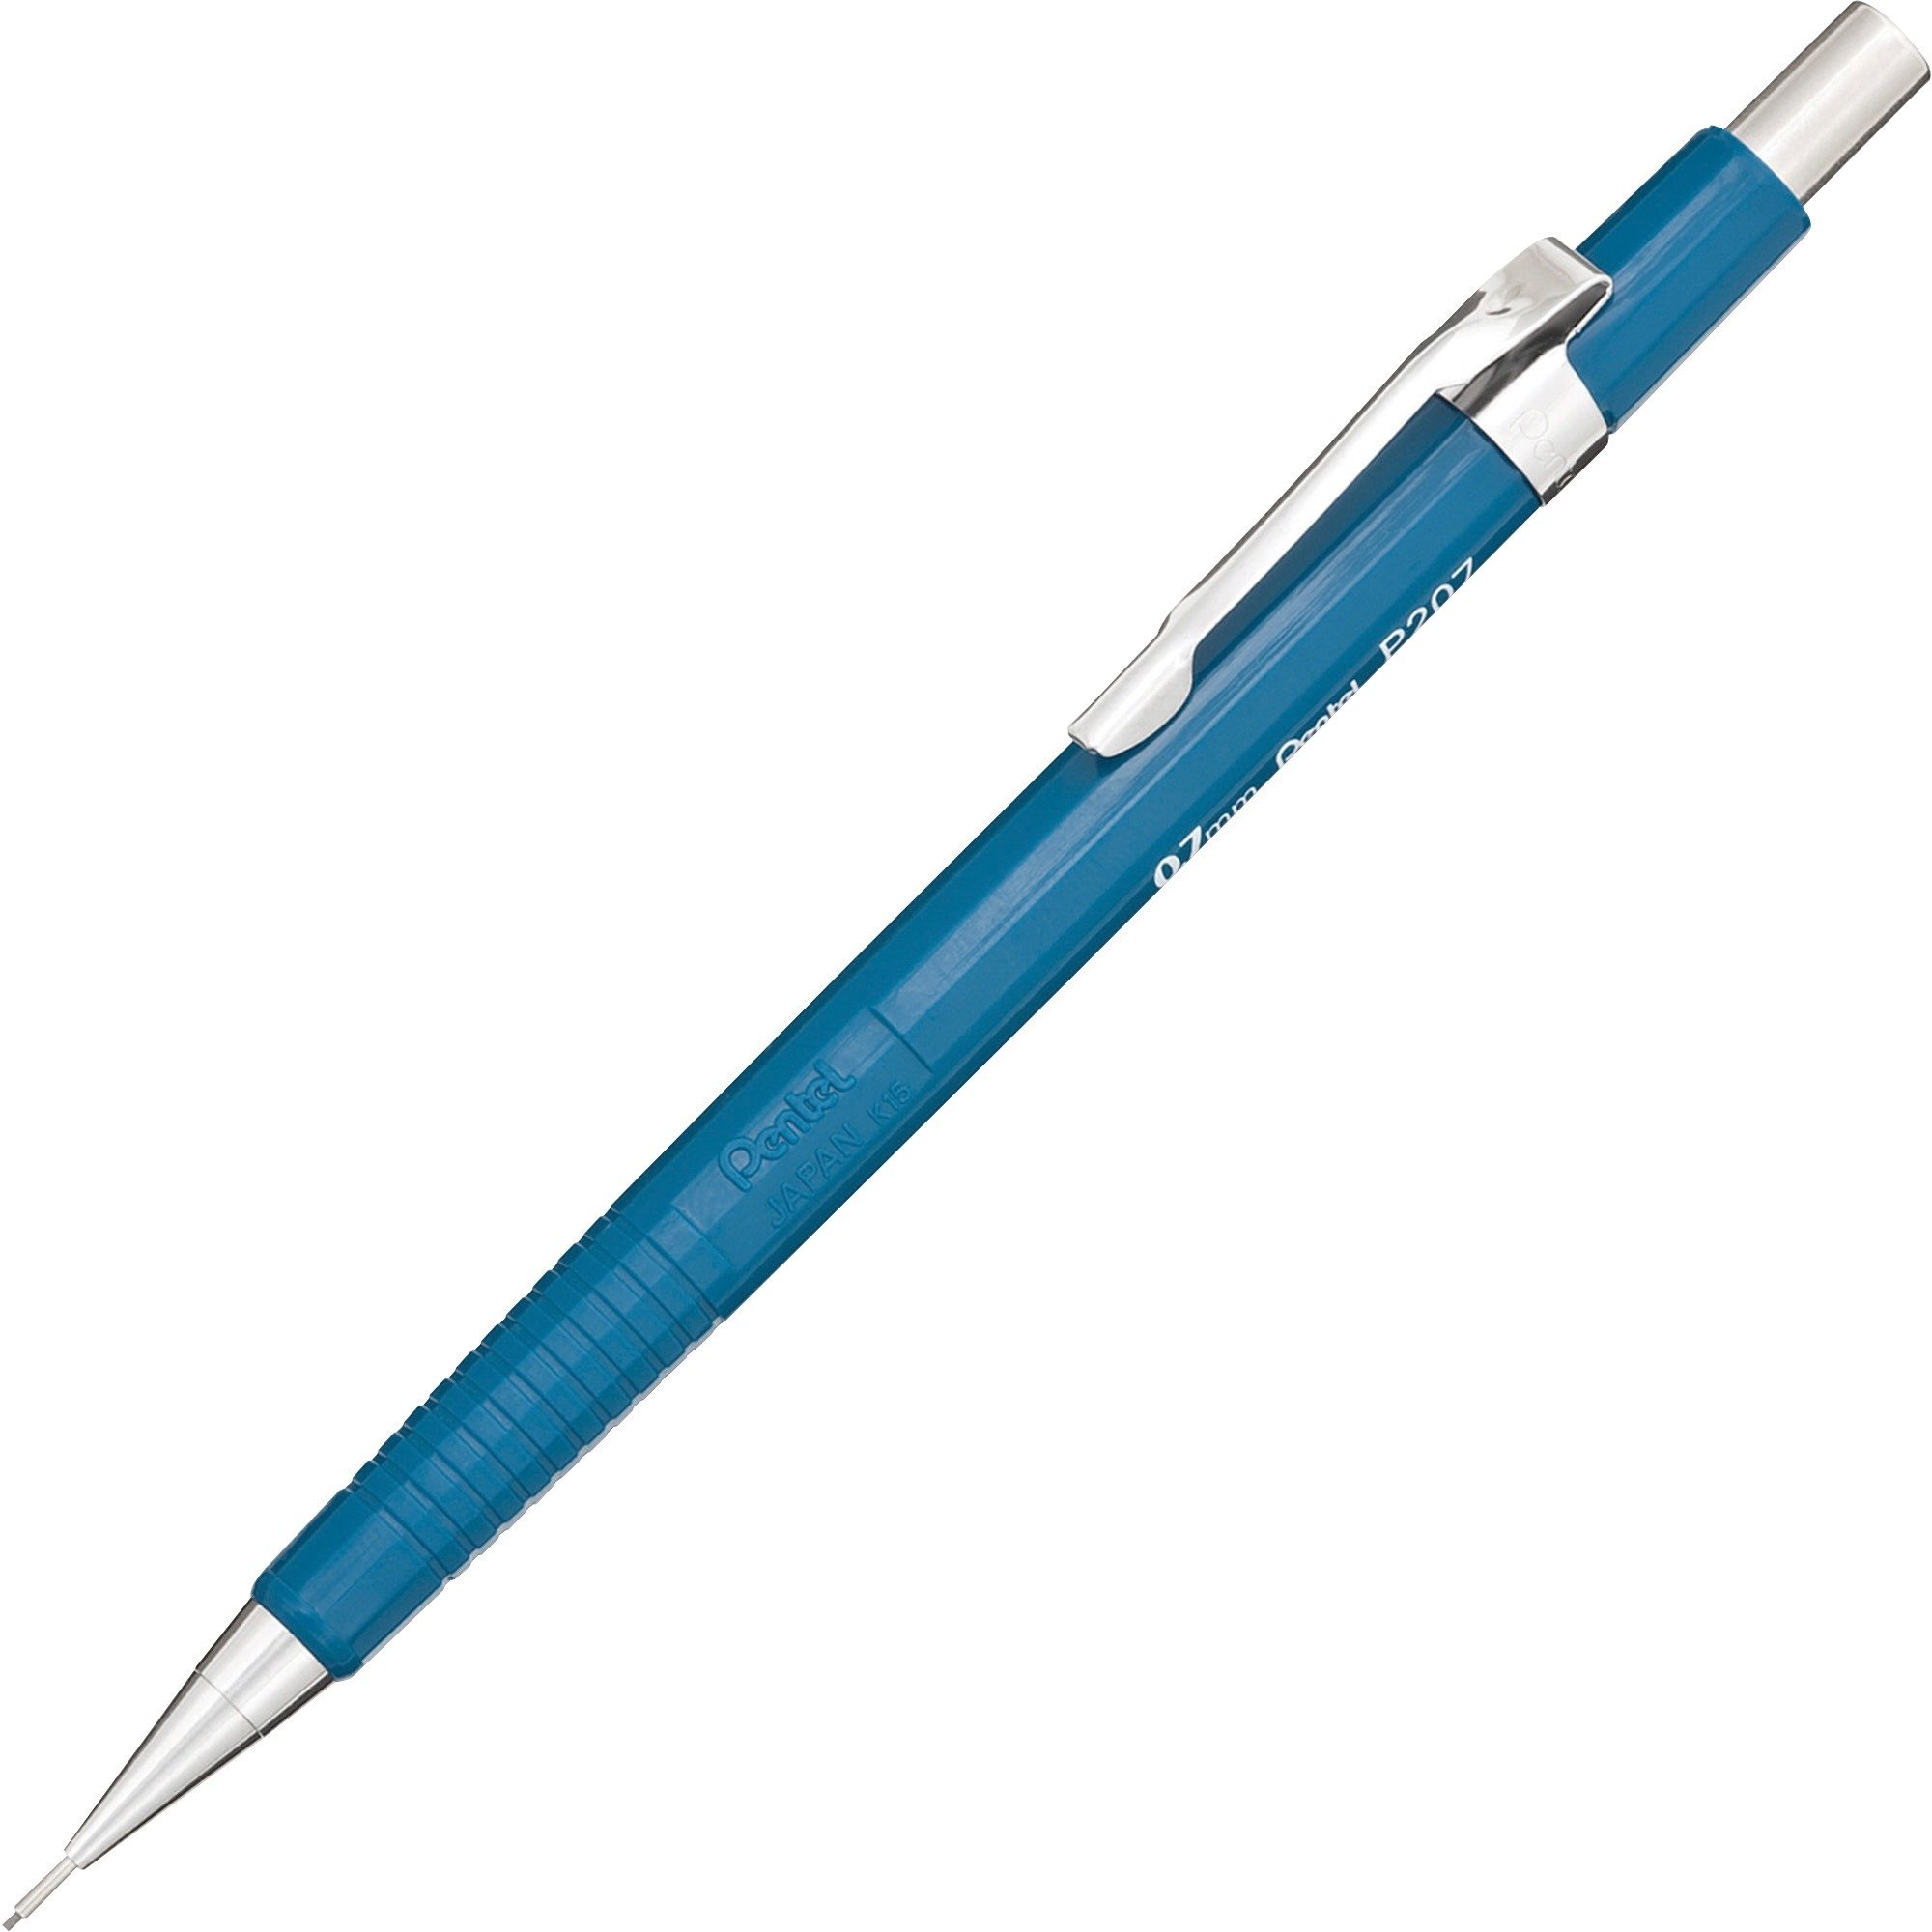 Pentel Sharp Automatic Pencils - Each